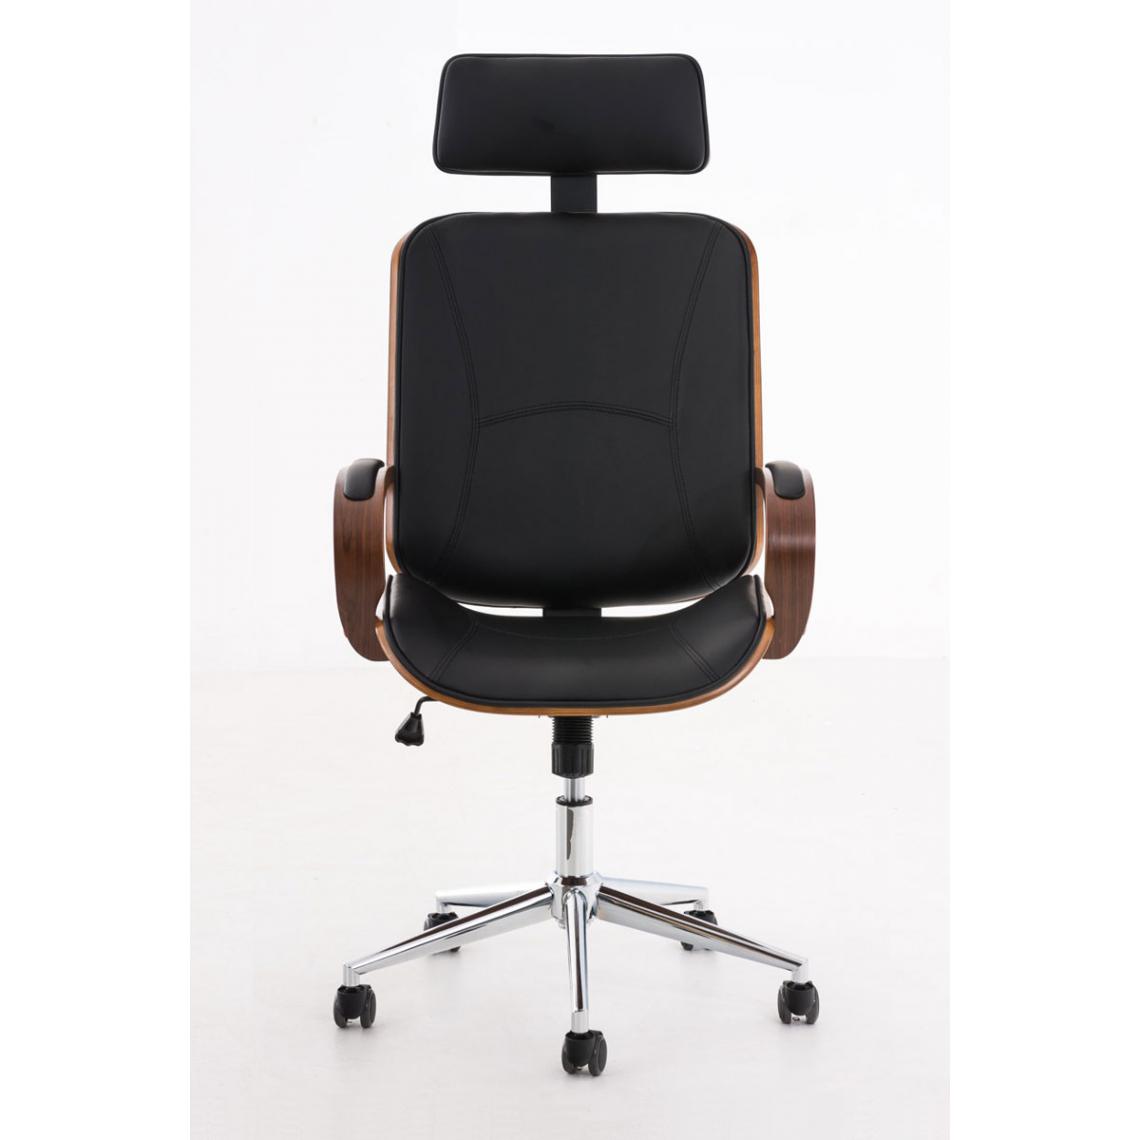 Icaverne - Contemporain Chaise de bureau selection Tachkent couleur noyer / noir - Chaises